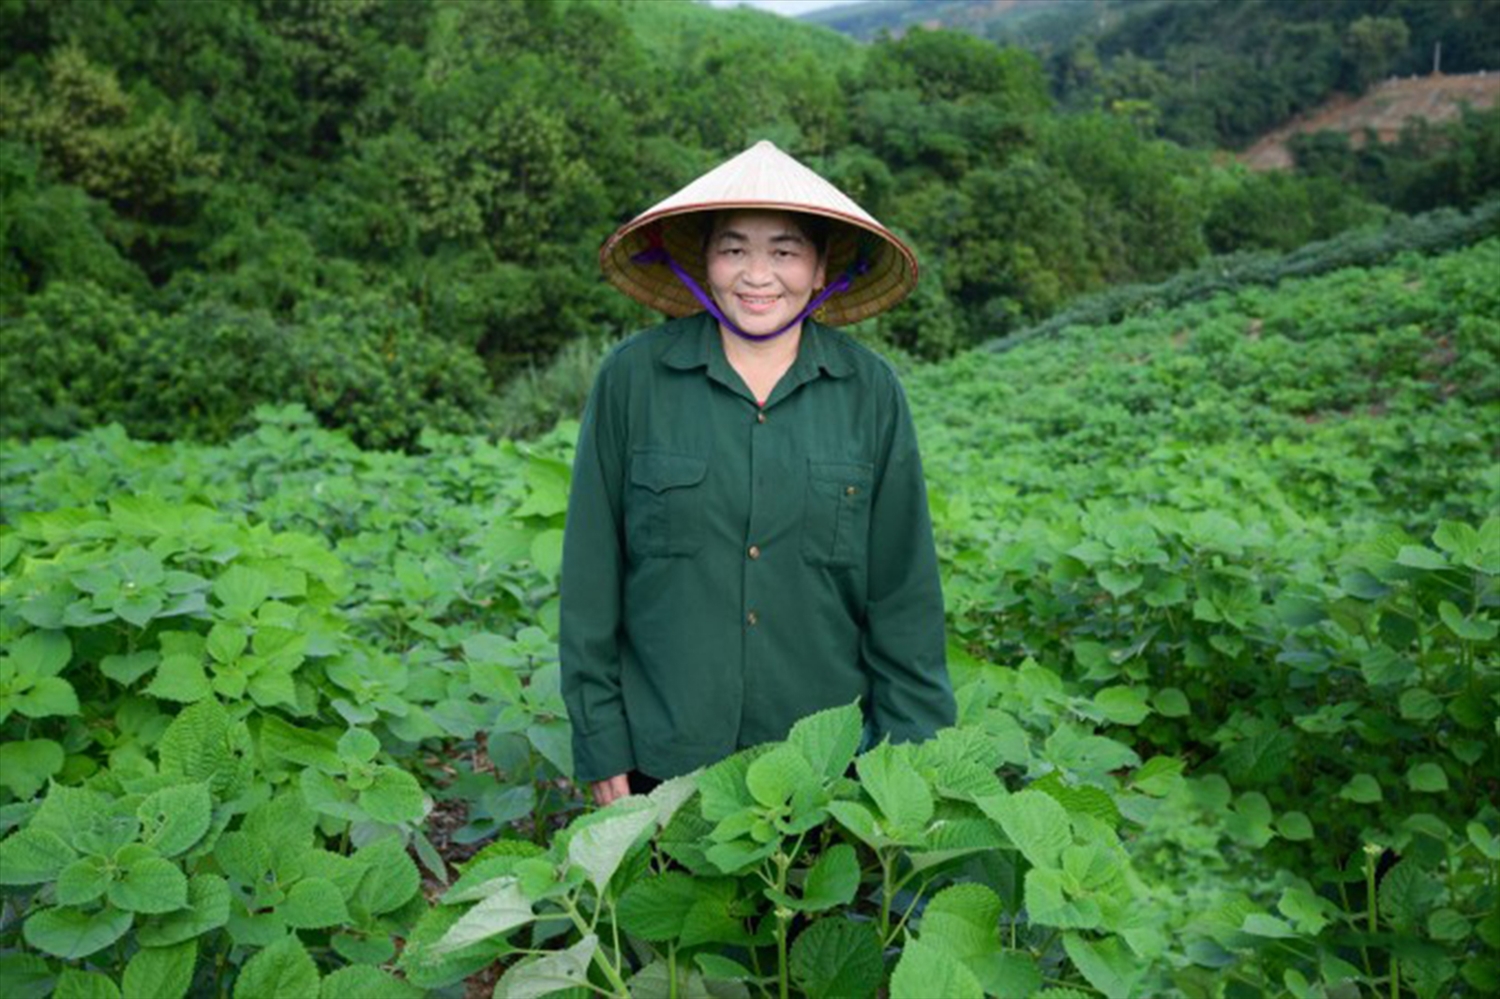 Nhận thấy cây gai xanh có đầu ra và thu nhập ổn định, bà Phạm Thị Thanh (Cẩm Hoa, xã Cẩm Tú) đã mở rộng diện tích trồng gai lên hơn 19ha.